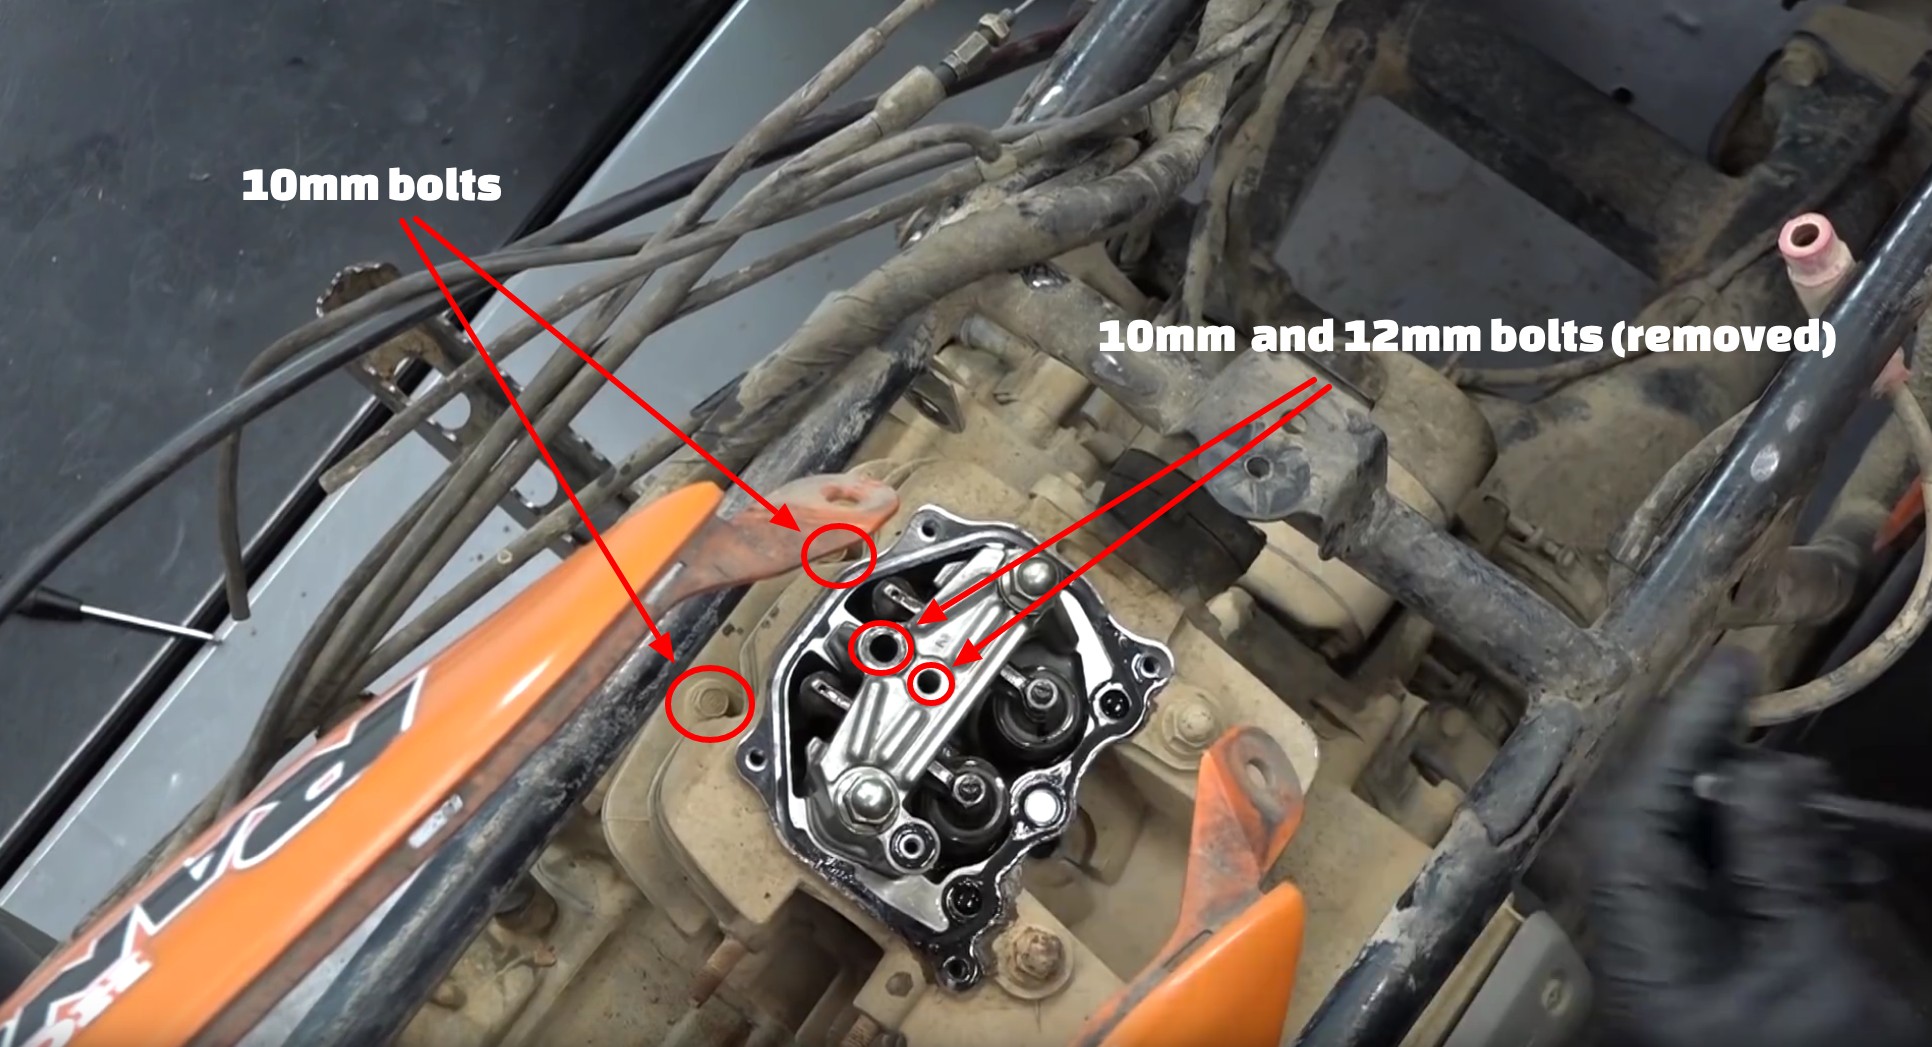 Honda TRX350 ATV top end rebuild